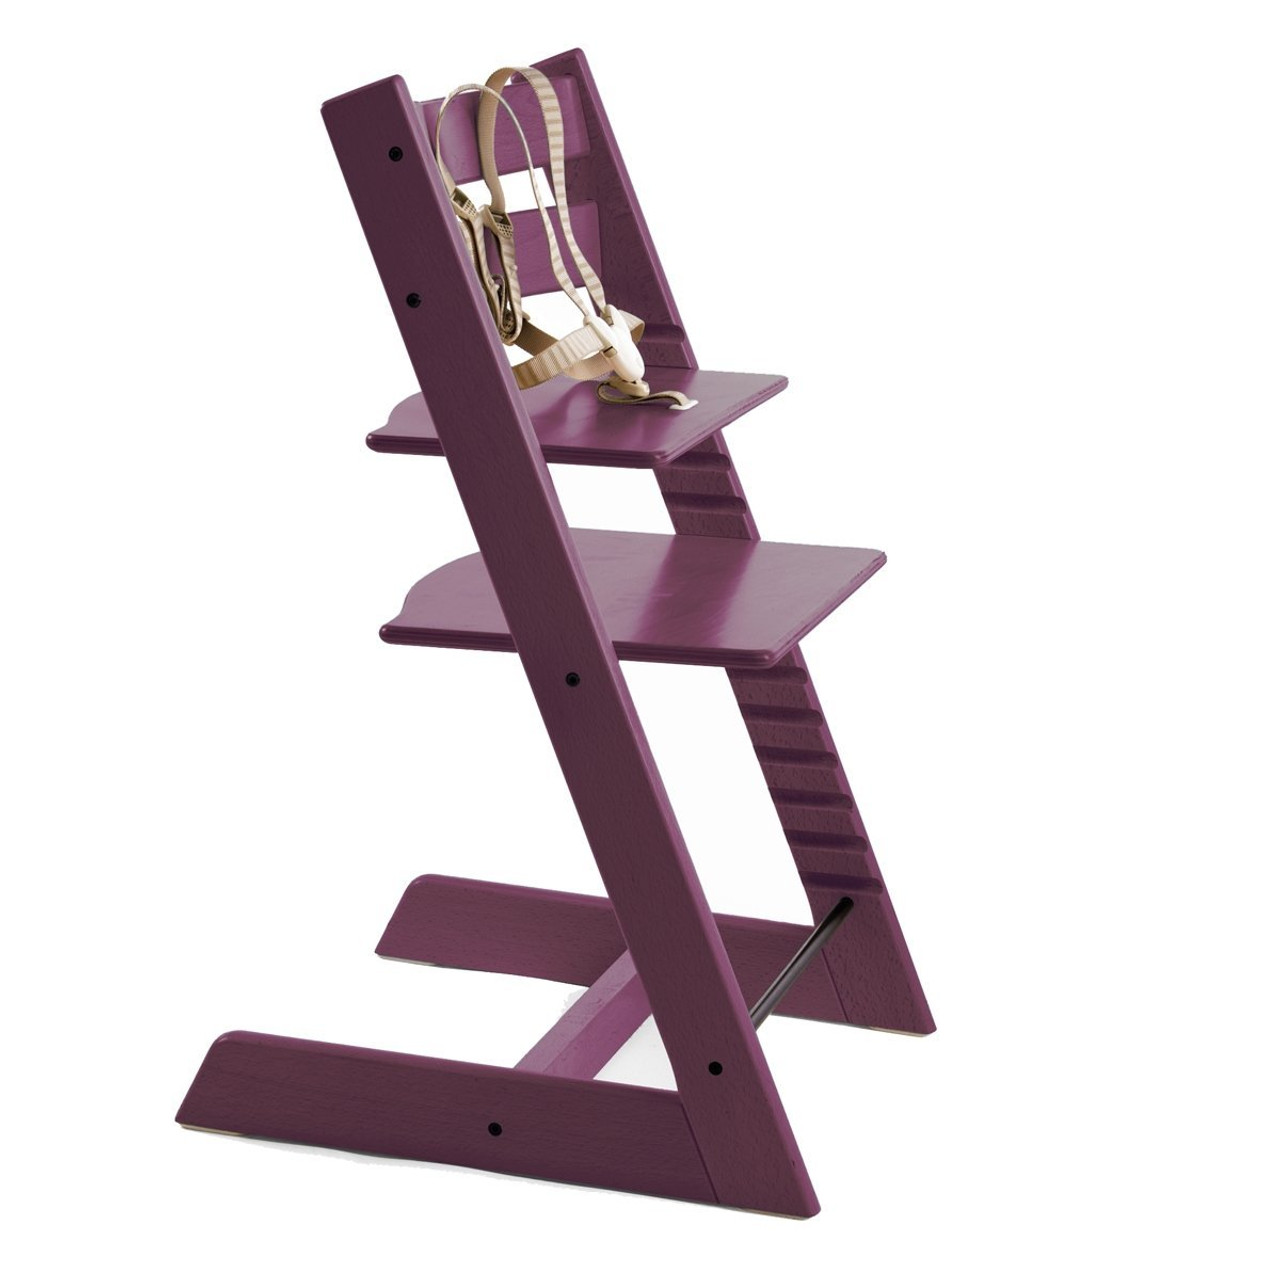 Stokke Tripp Trapp Highchair in Purple